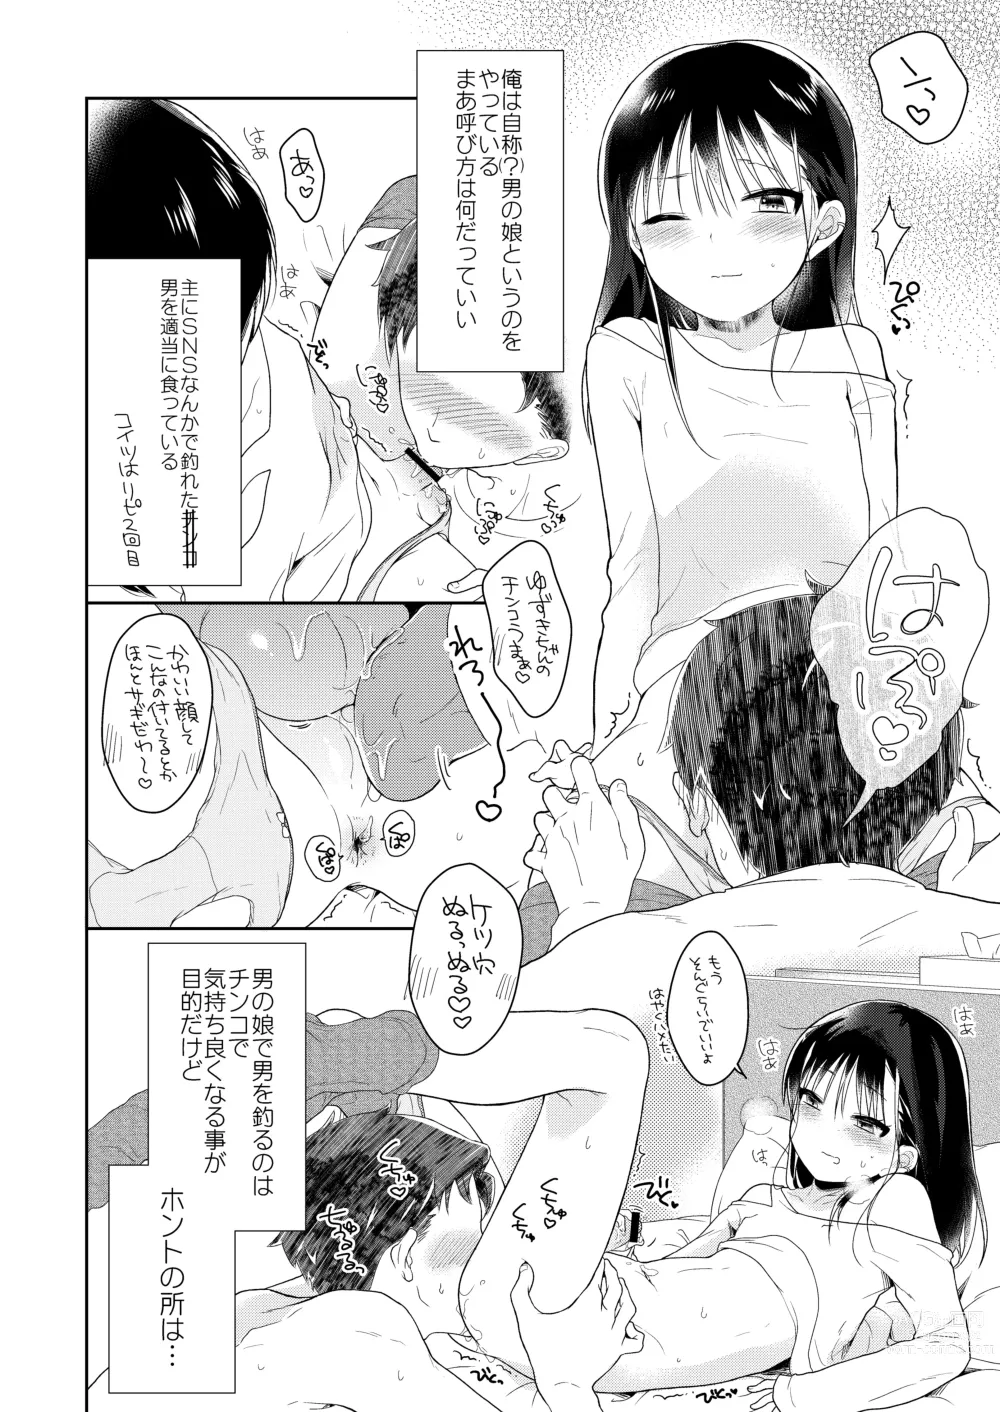 Page 3 of doujinshi Otokonoko x Otokonoko = Saikou